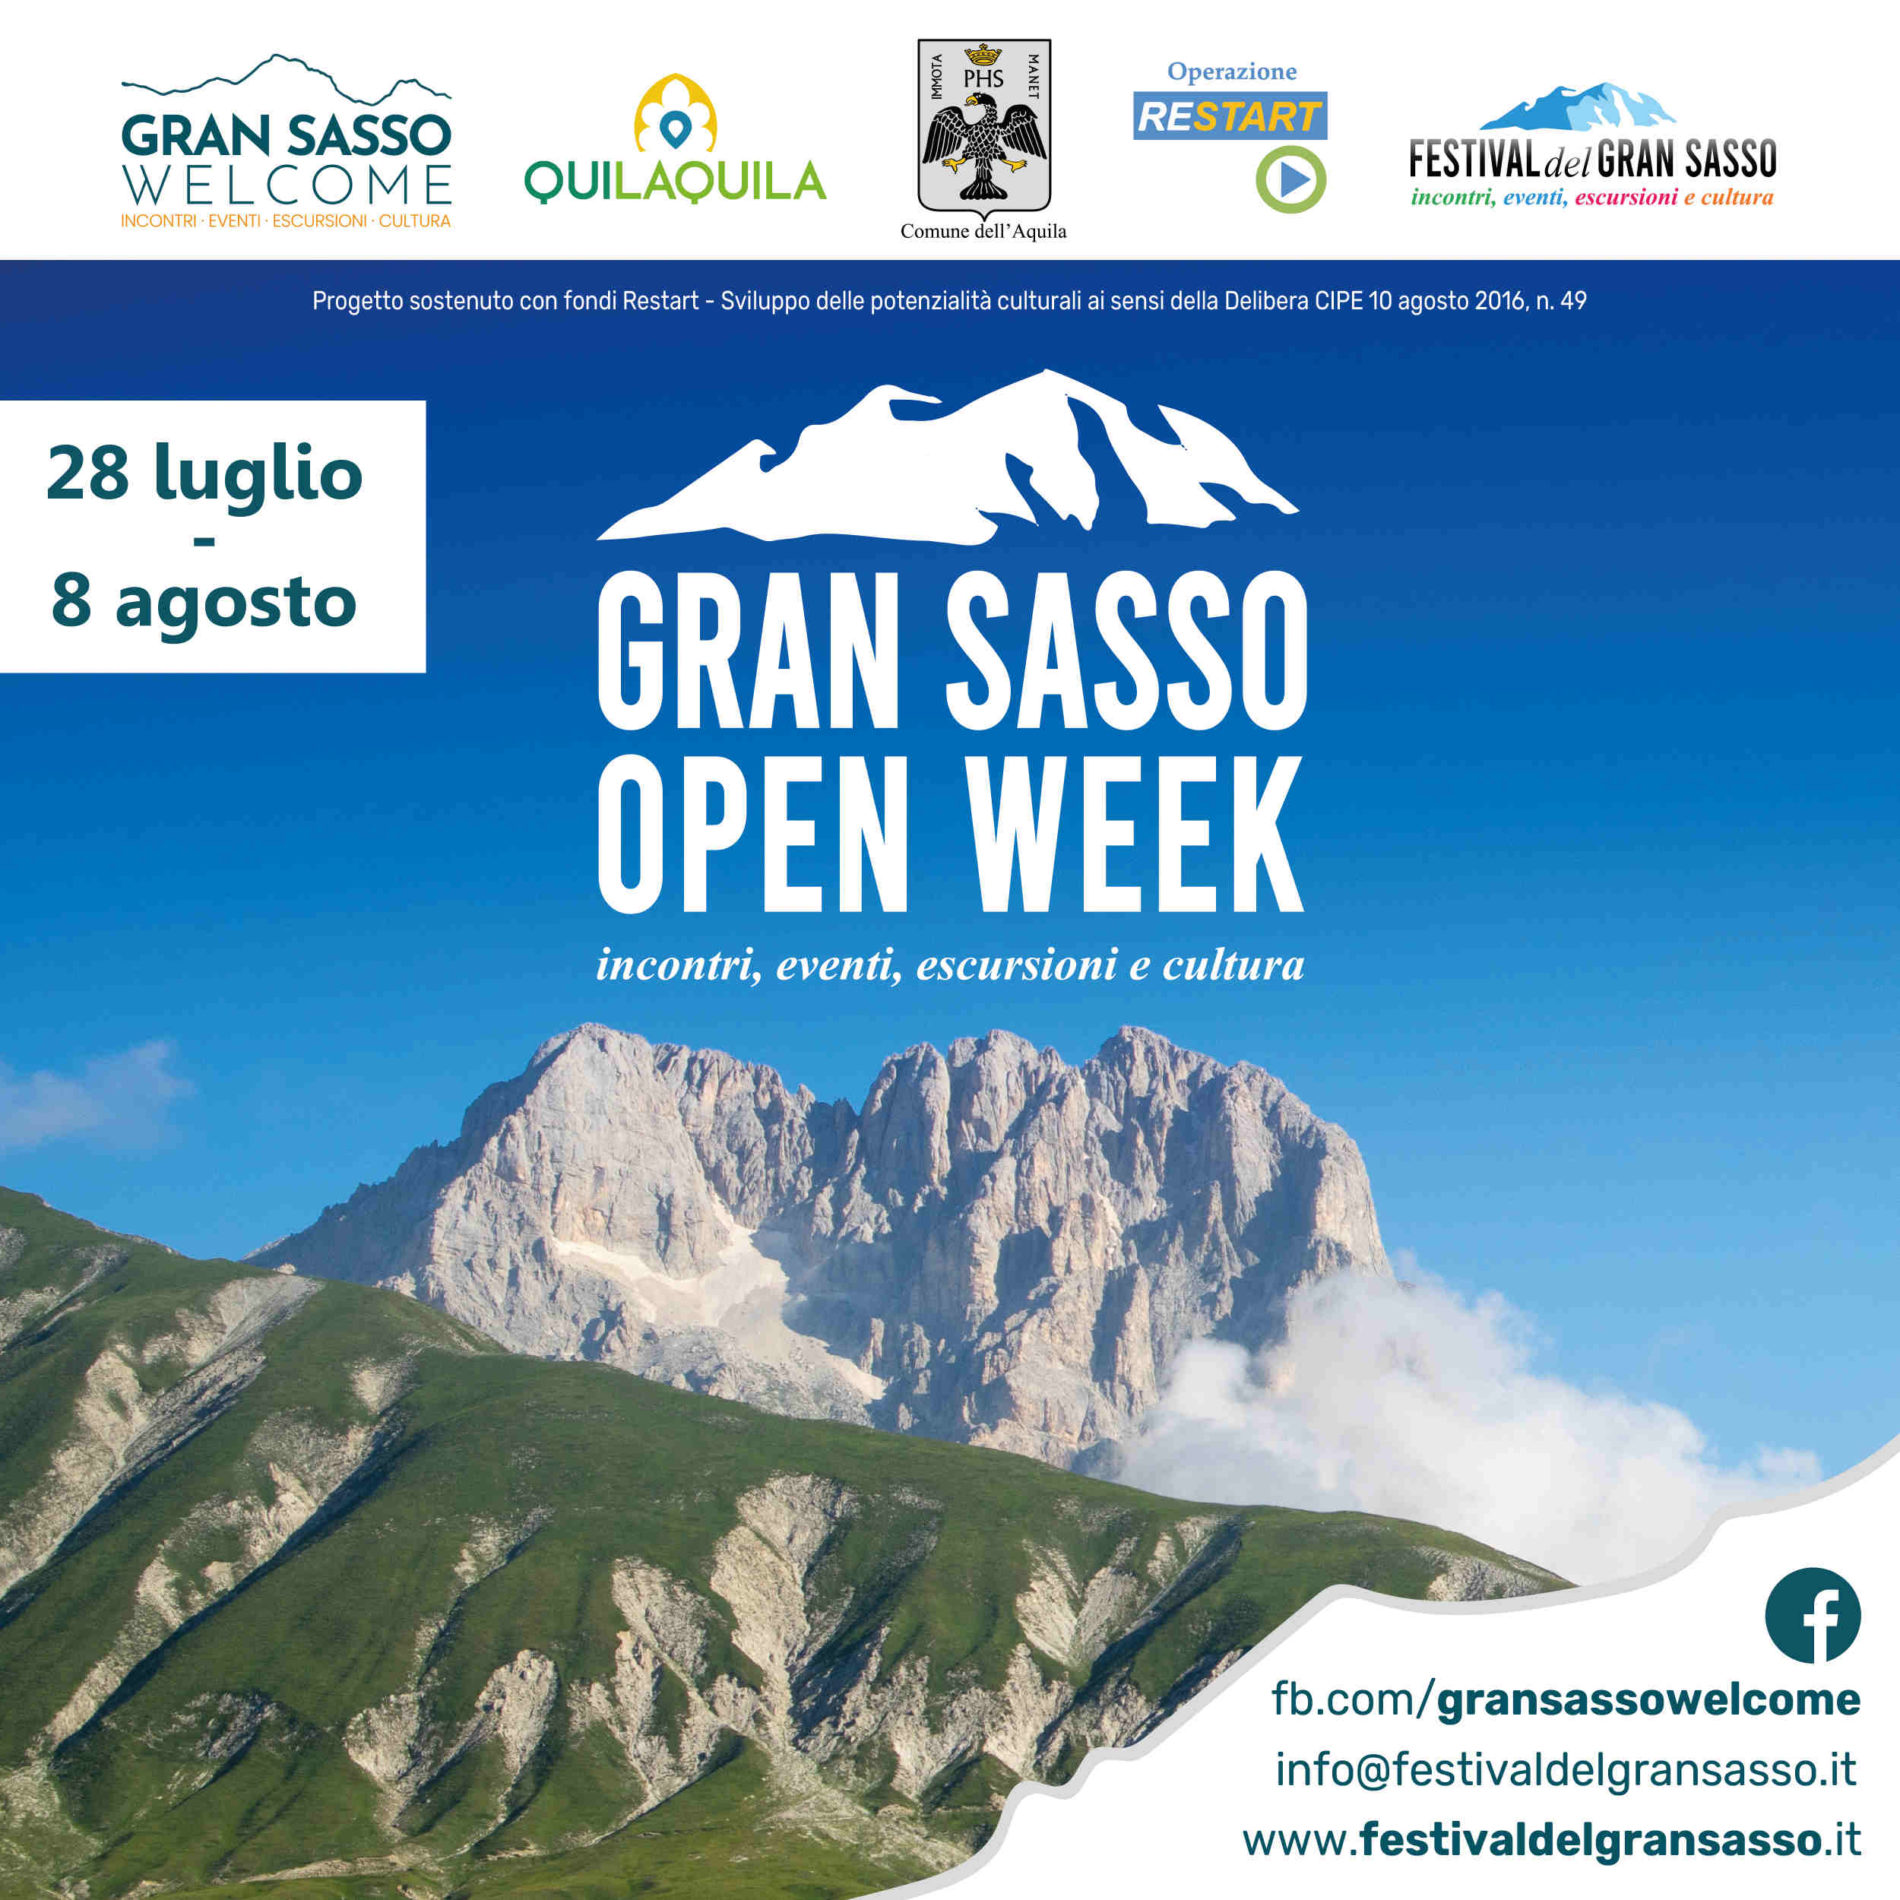 L’AQUILA. Festival del Gran Sasso. Open Week 2021